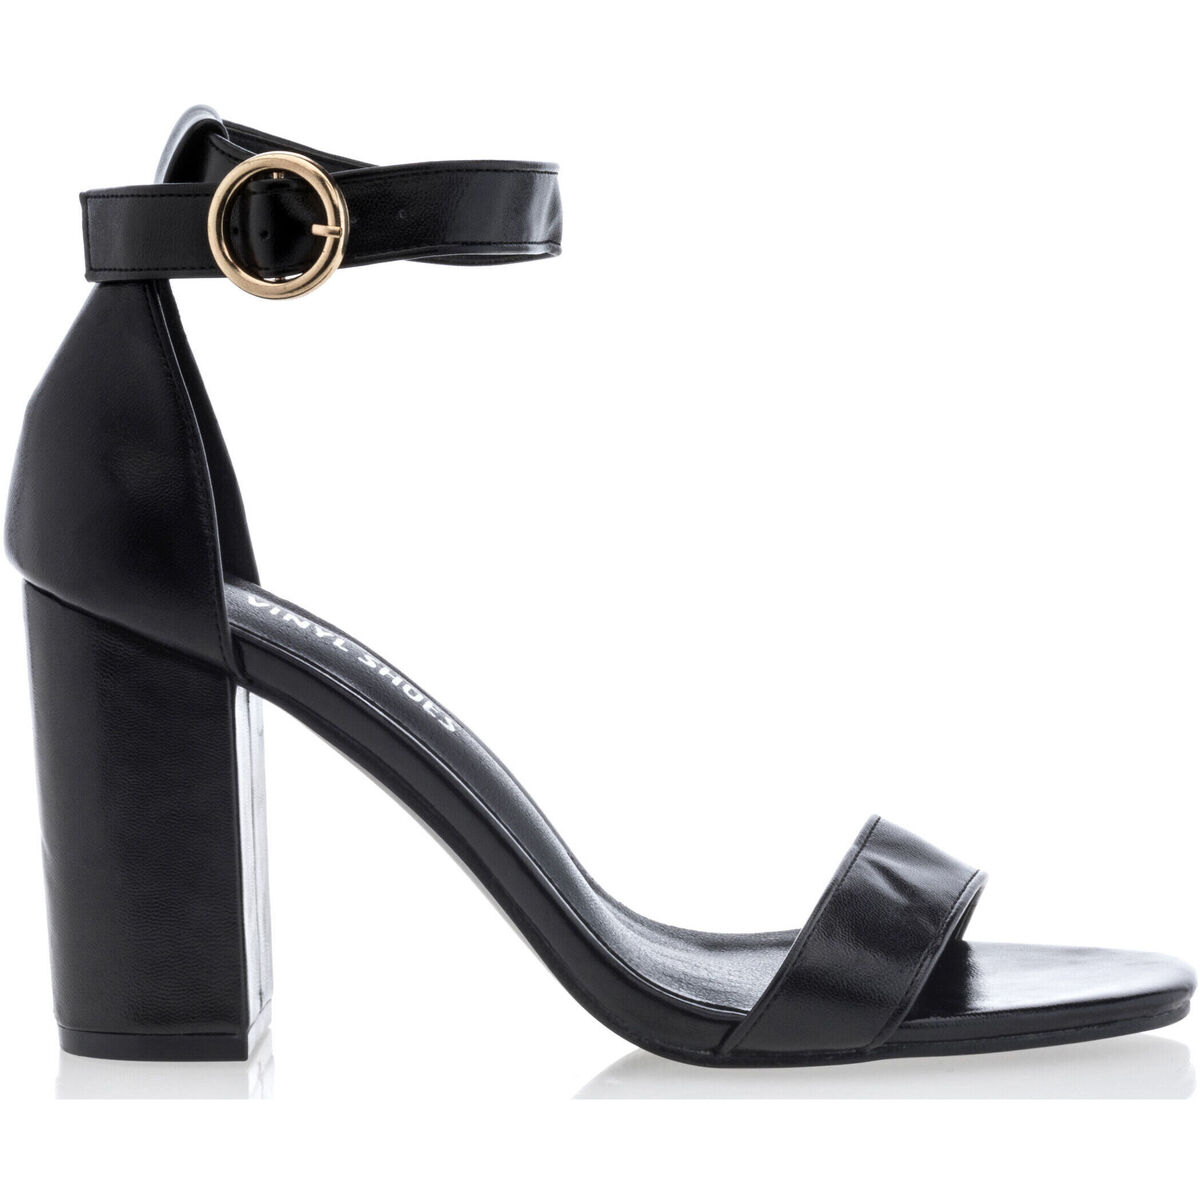 Chaussures Femme ankle boots rylko 6rvf6 t1 czarny Vinyl breathable Shoes Sandales / nu-pieds Femme Noir Noir